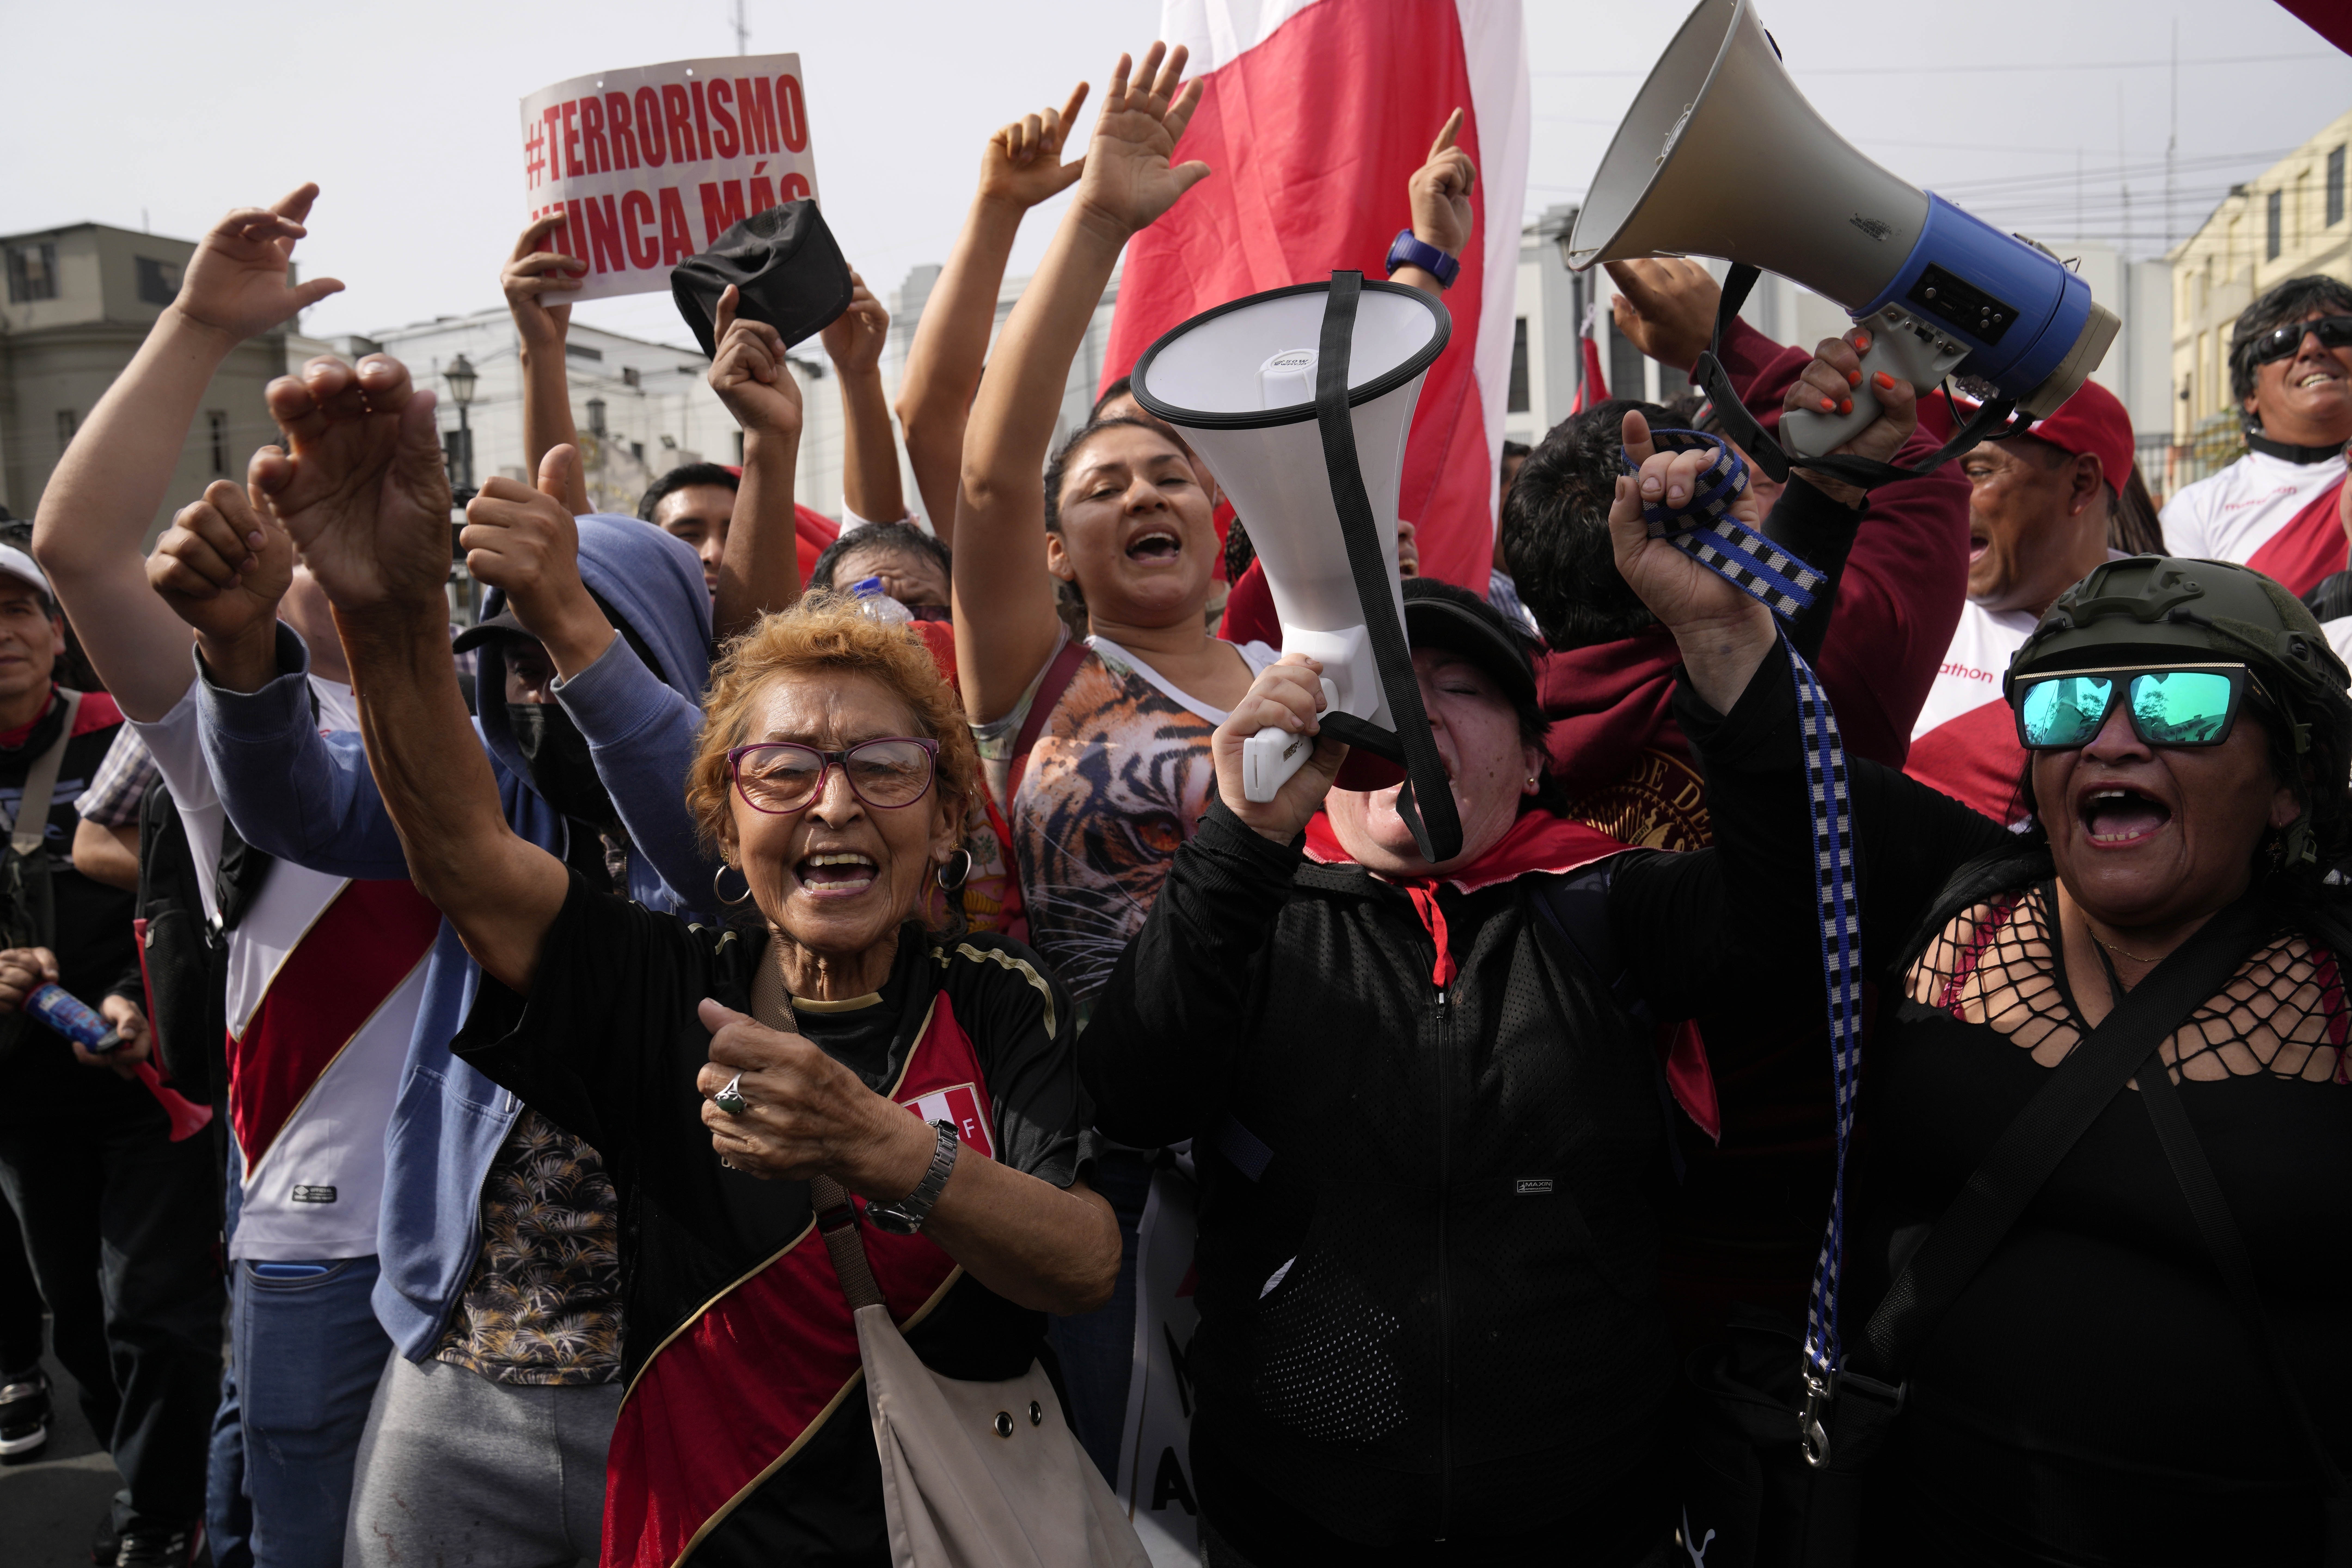 Los opositores al presidente peruano Pedro Castillo se manifiestan cerca de la estación de policía adonde llegó y su estado no quedó claro de inmediato, en Lima, Perú, el miércoles 7 de diciembre de 2022. (AP Foto/Martín Mejía)